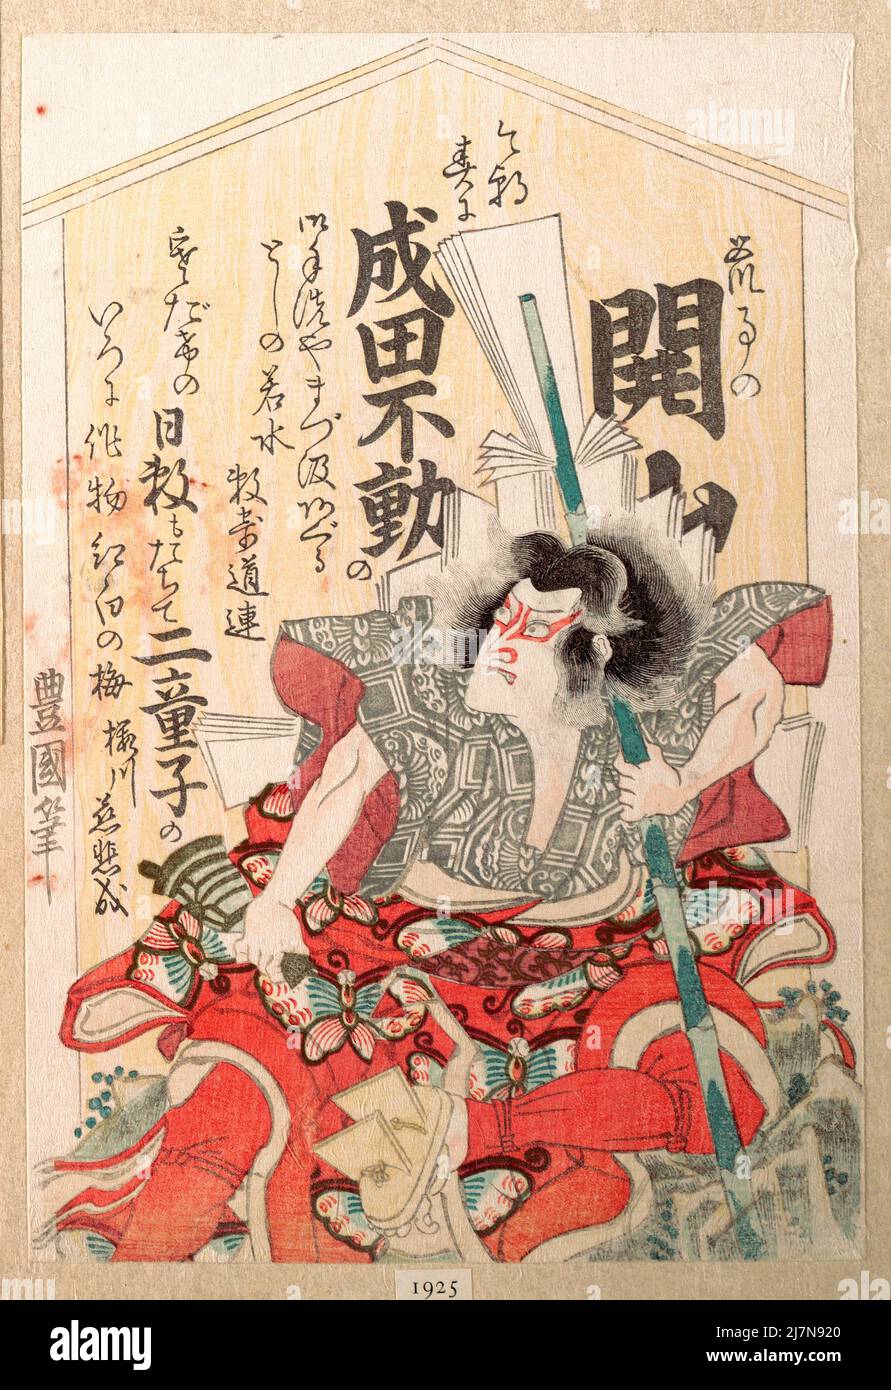 Kabuki Actor by Utagawa Toyoshige - Print 1925 Stock Photo